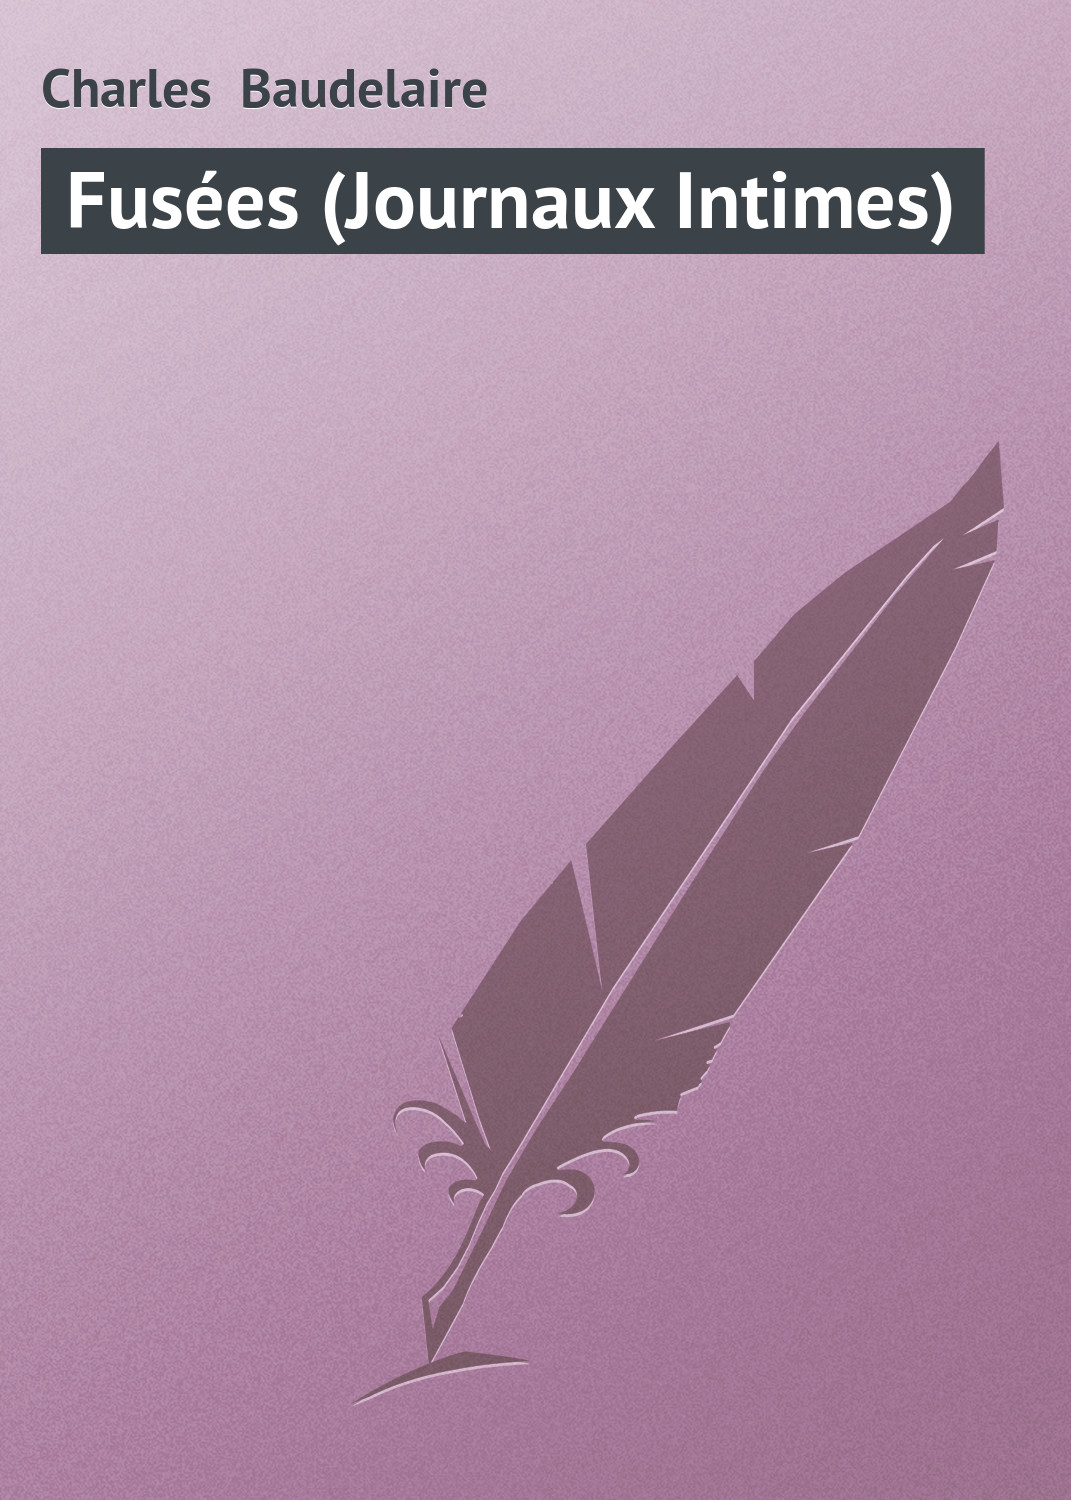 Книга Fusées (Journaux Intimes) из серии , созданная Charles Baudelaire, может относится к жанру Зарубежная старинная литература, Зарубежная классика. Стоимость электронной книги Fusées (Journaux Intimes) с идентификатором 21105886 составляет 5.99 руб.